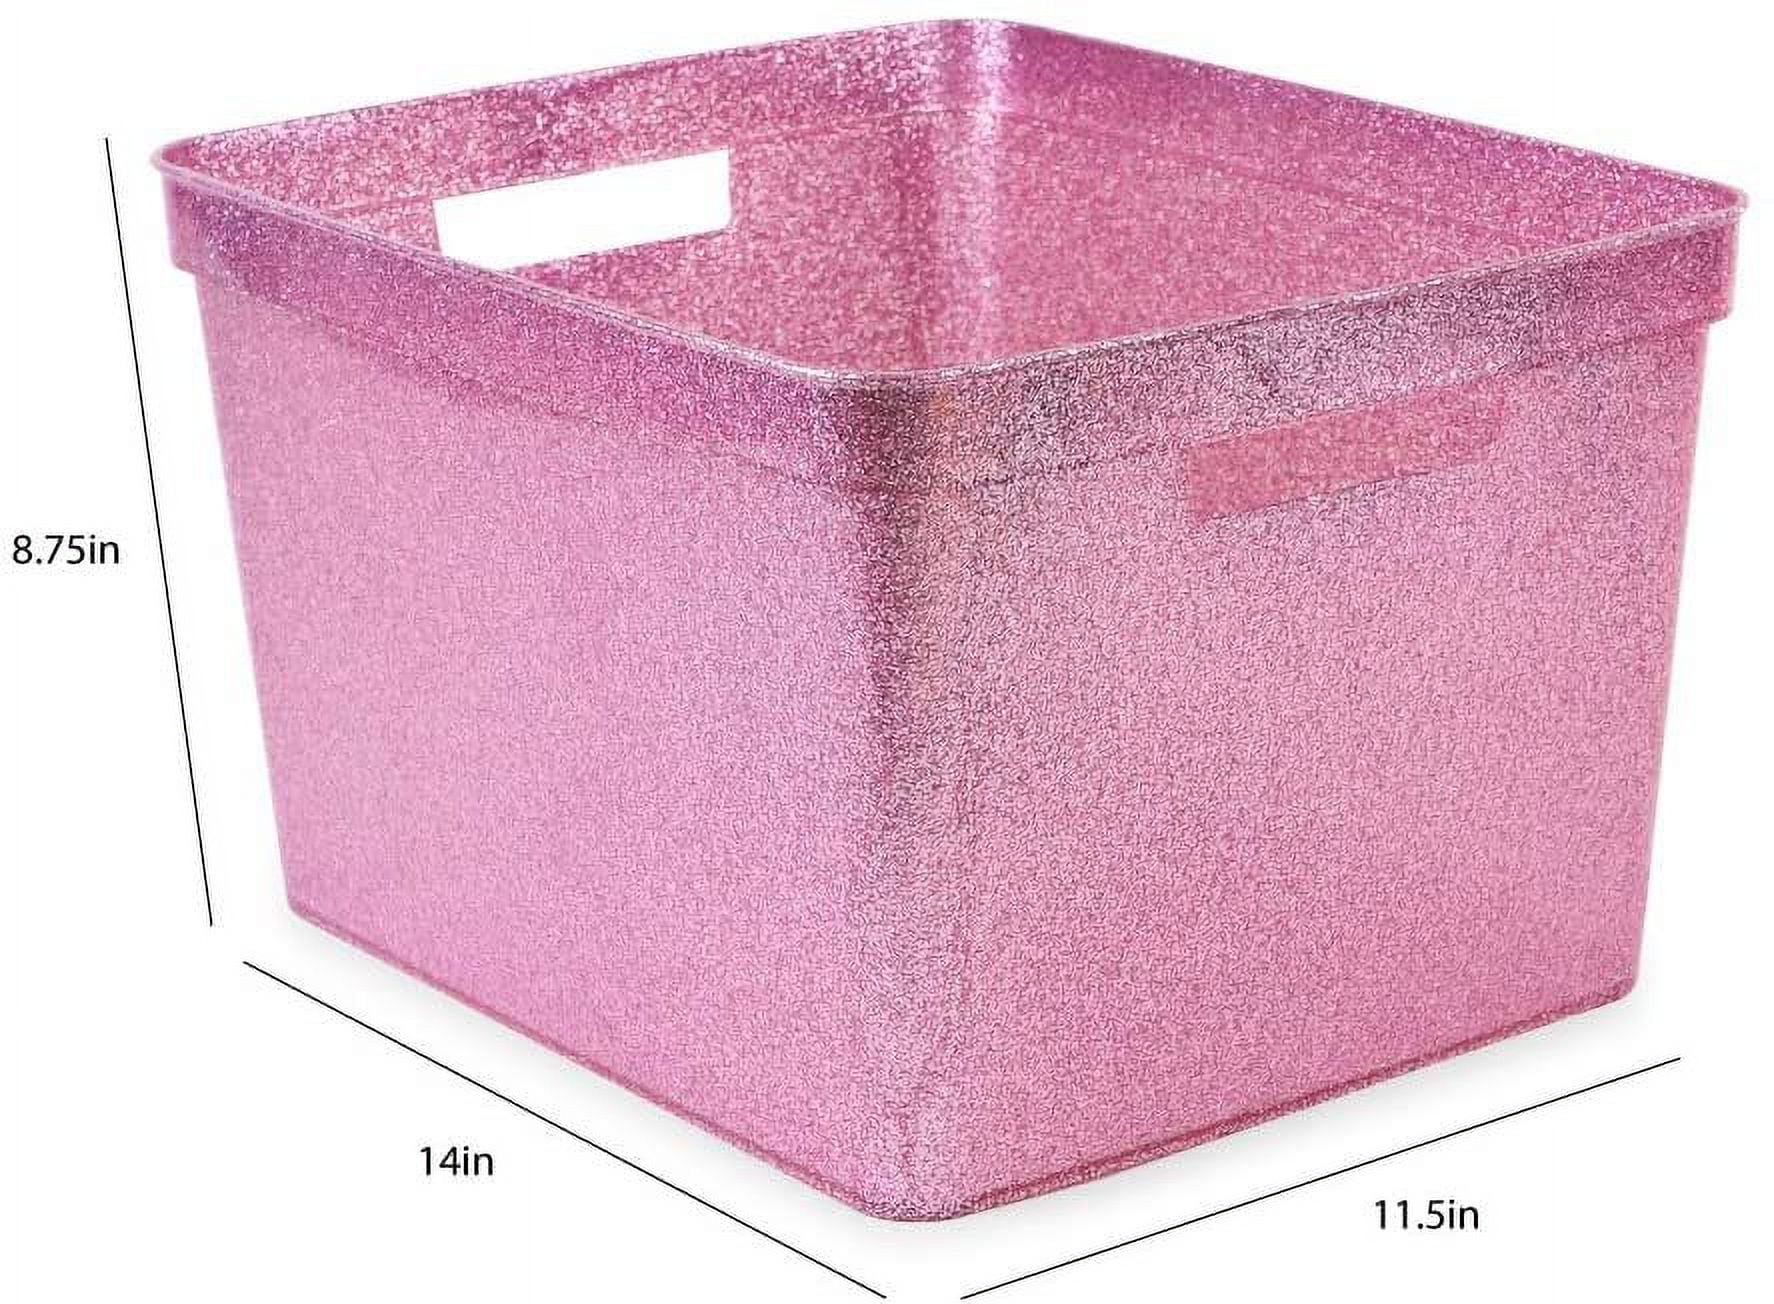  Isaac Jacobs Large Glitter Storage Bin (14” x 11.5” x